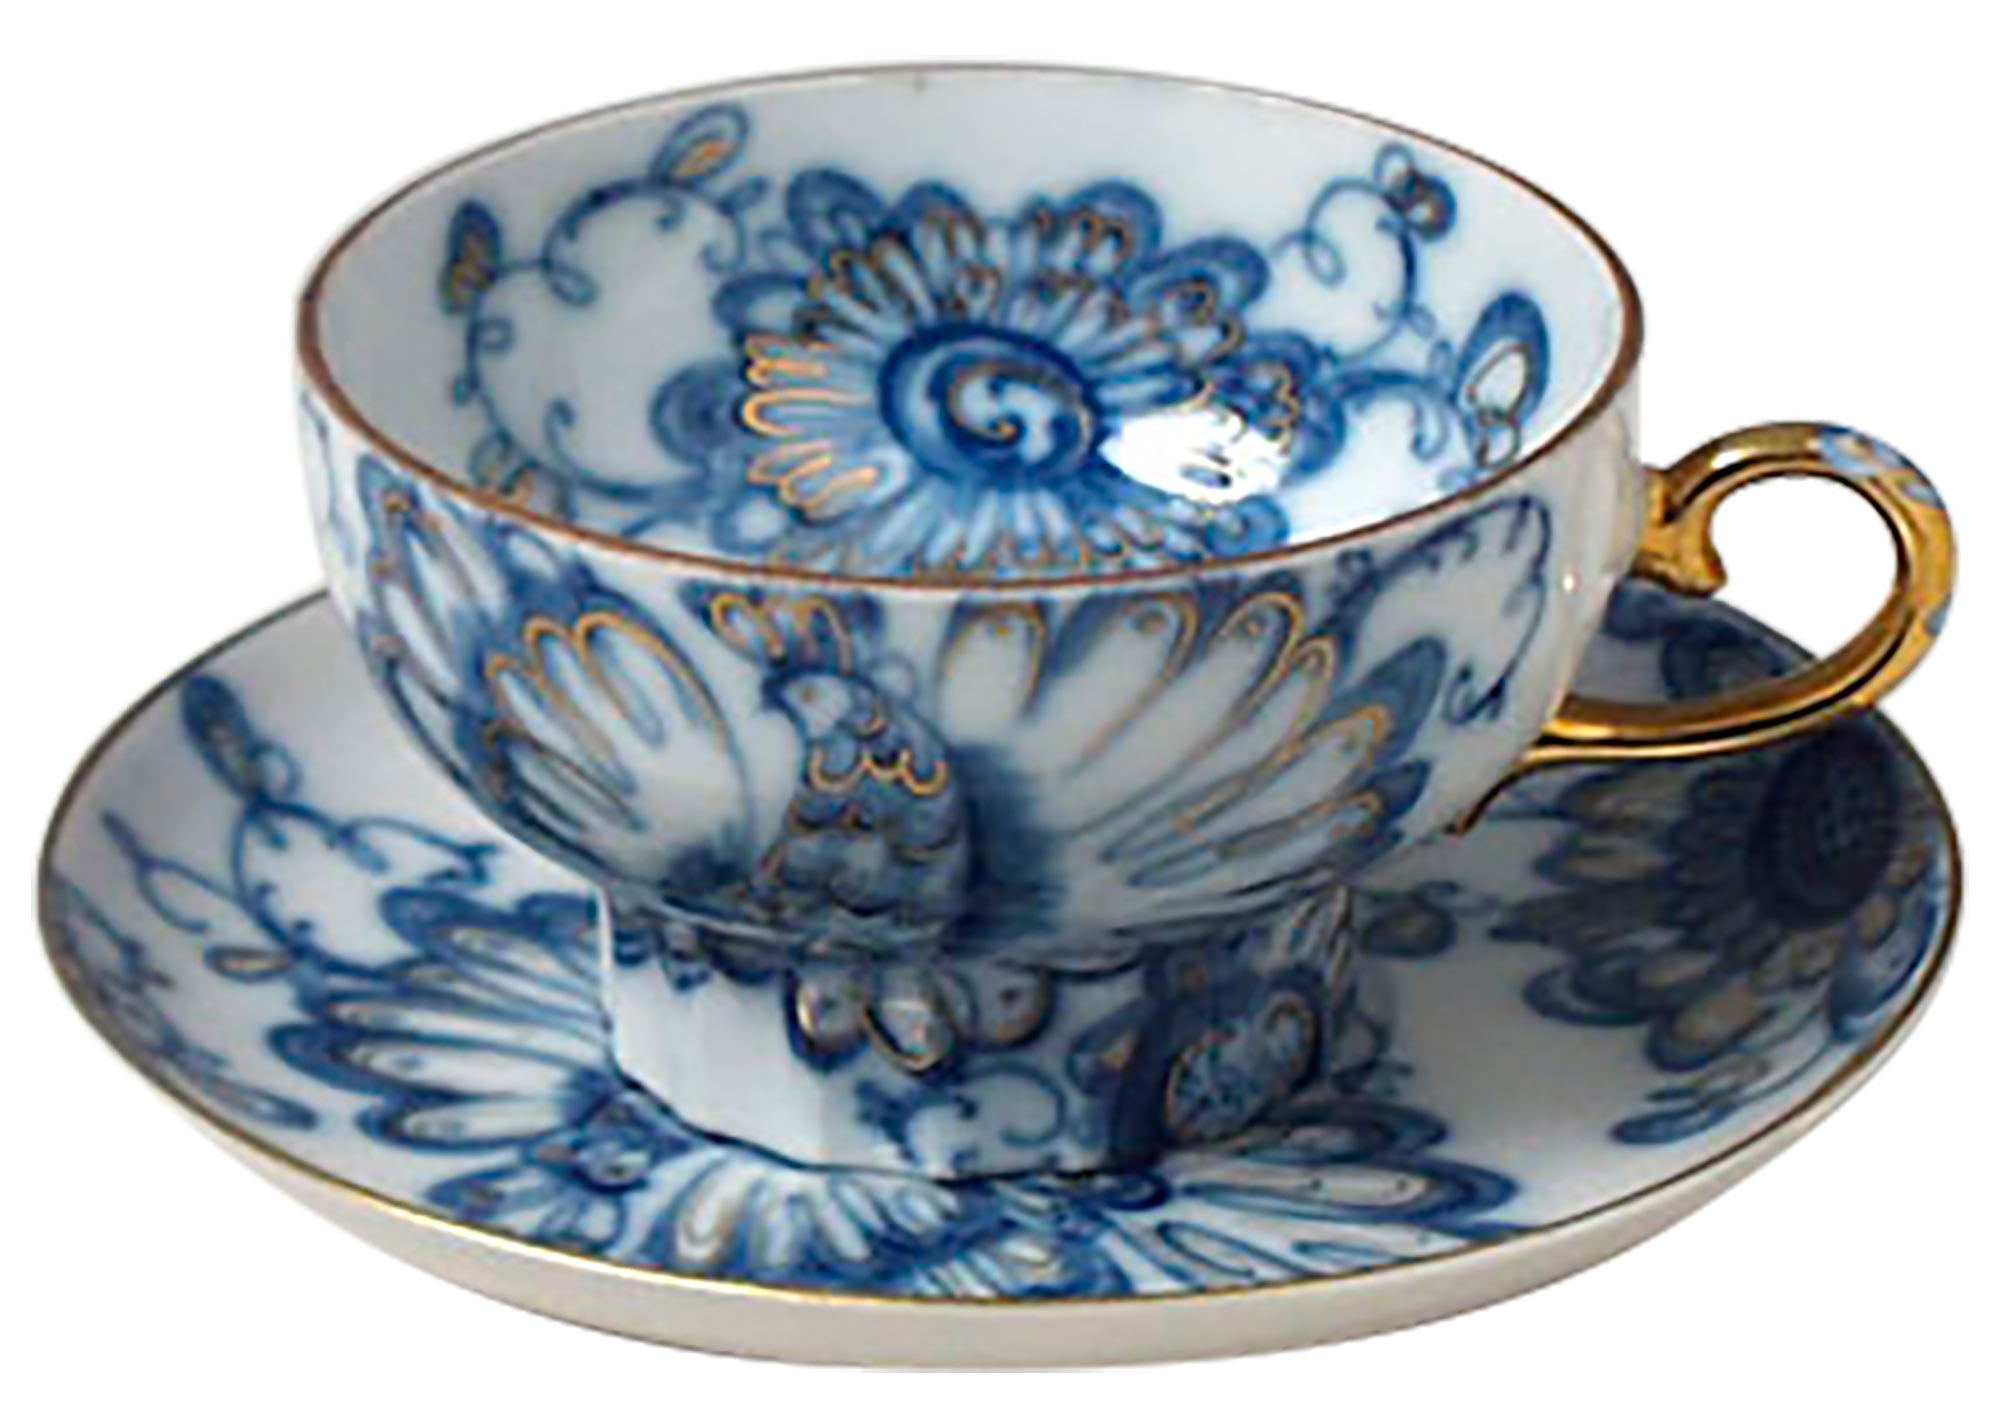 Buy Singing Garden Porcelain Cup & Saucer  at GoldenCockerel.com